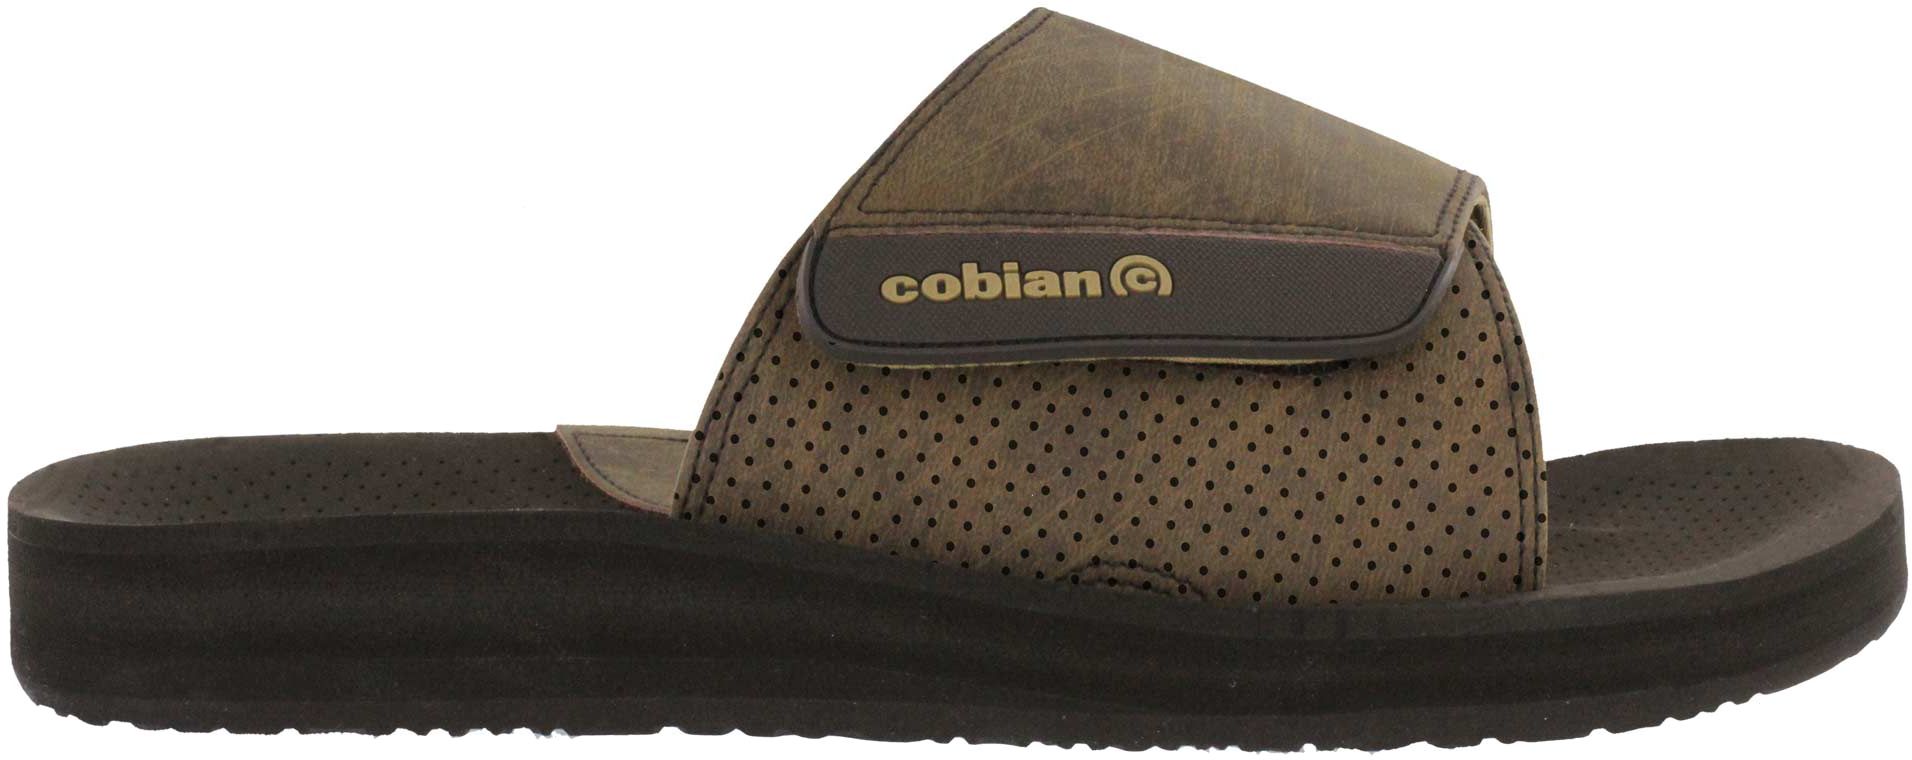 cobian slides